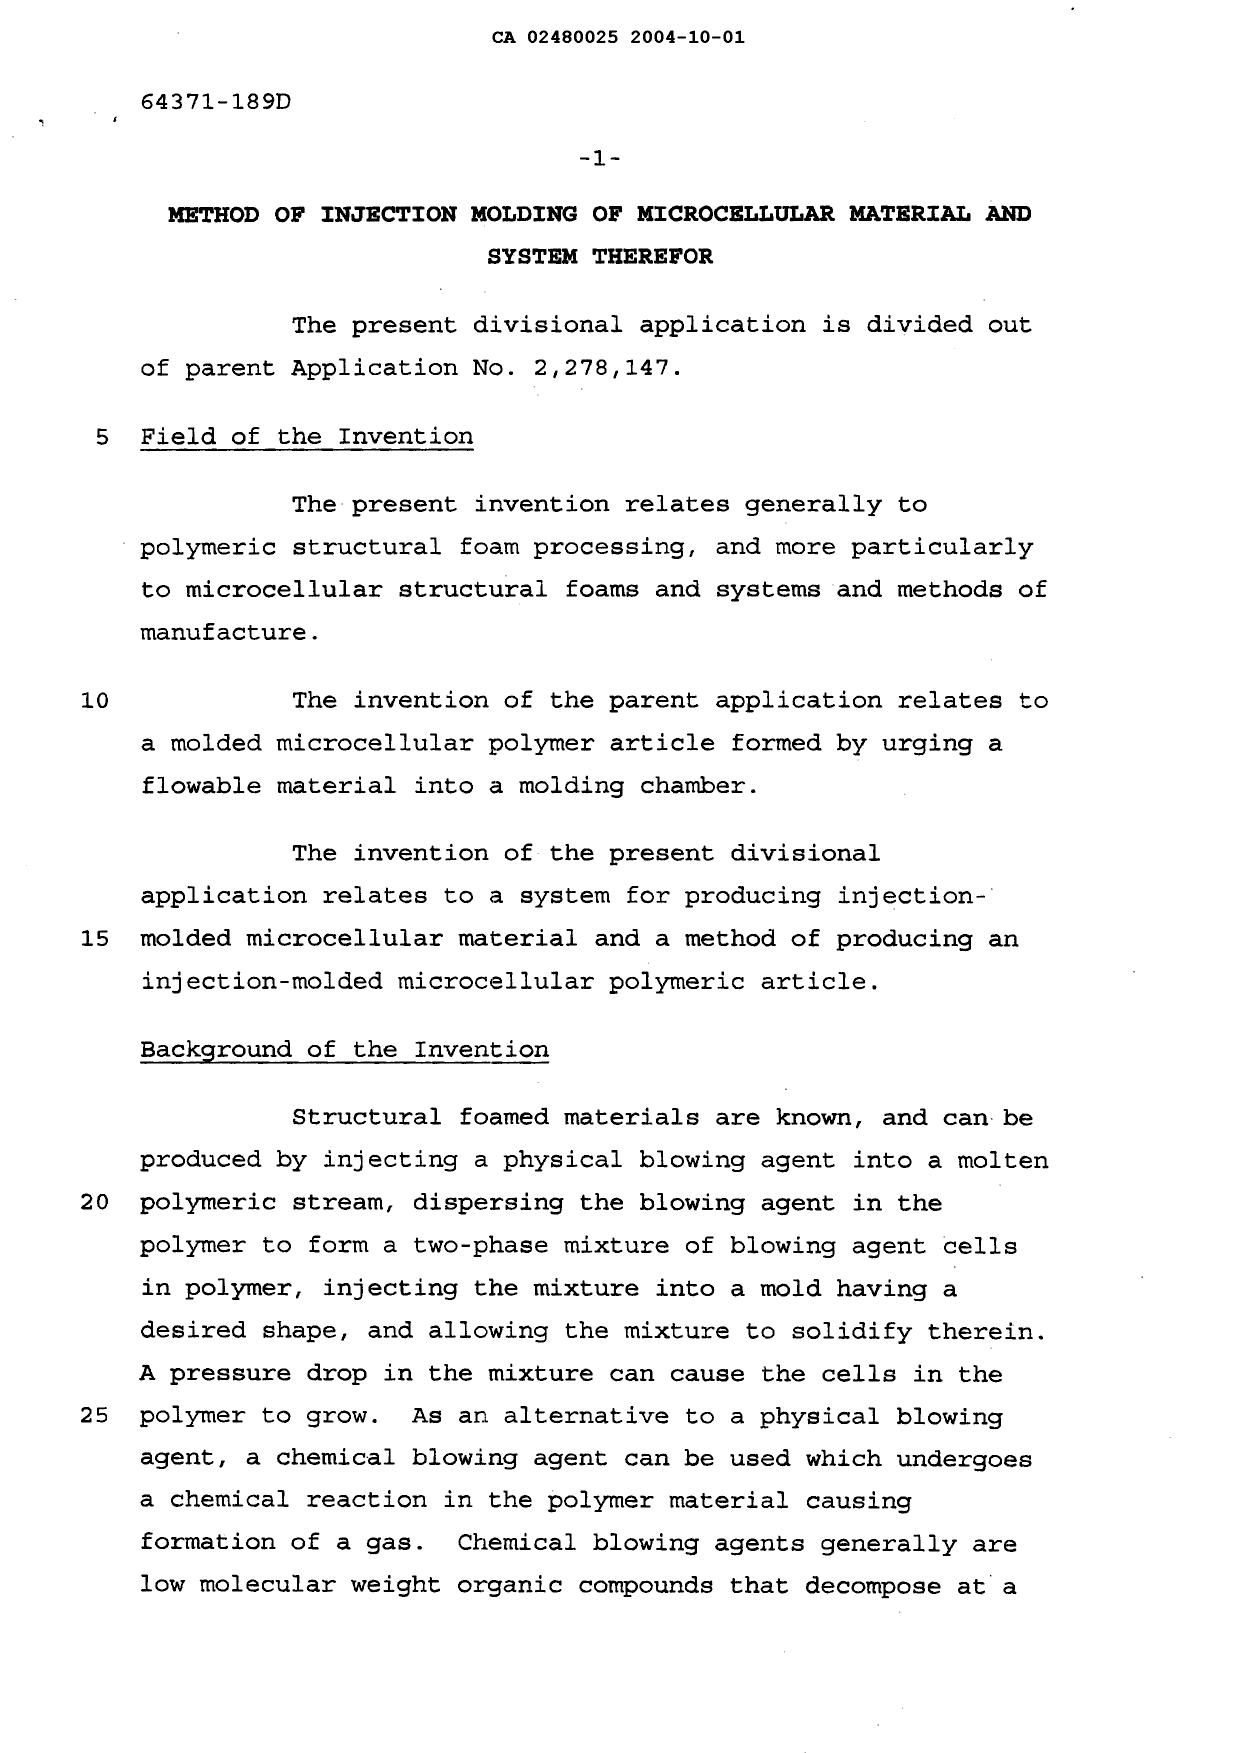 Canadian Patent Document 2480025. Description 20041001. Image 1 of 41